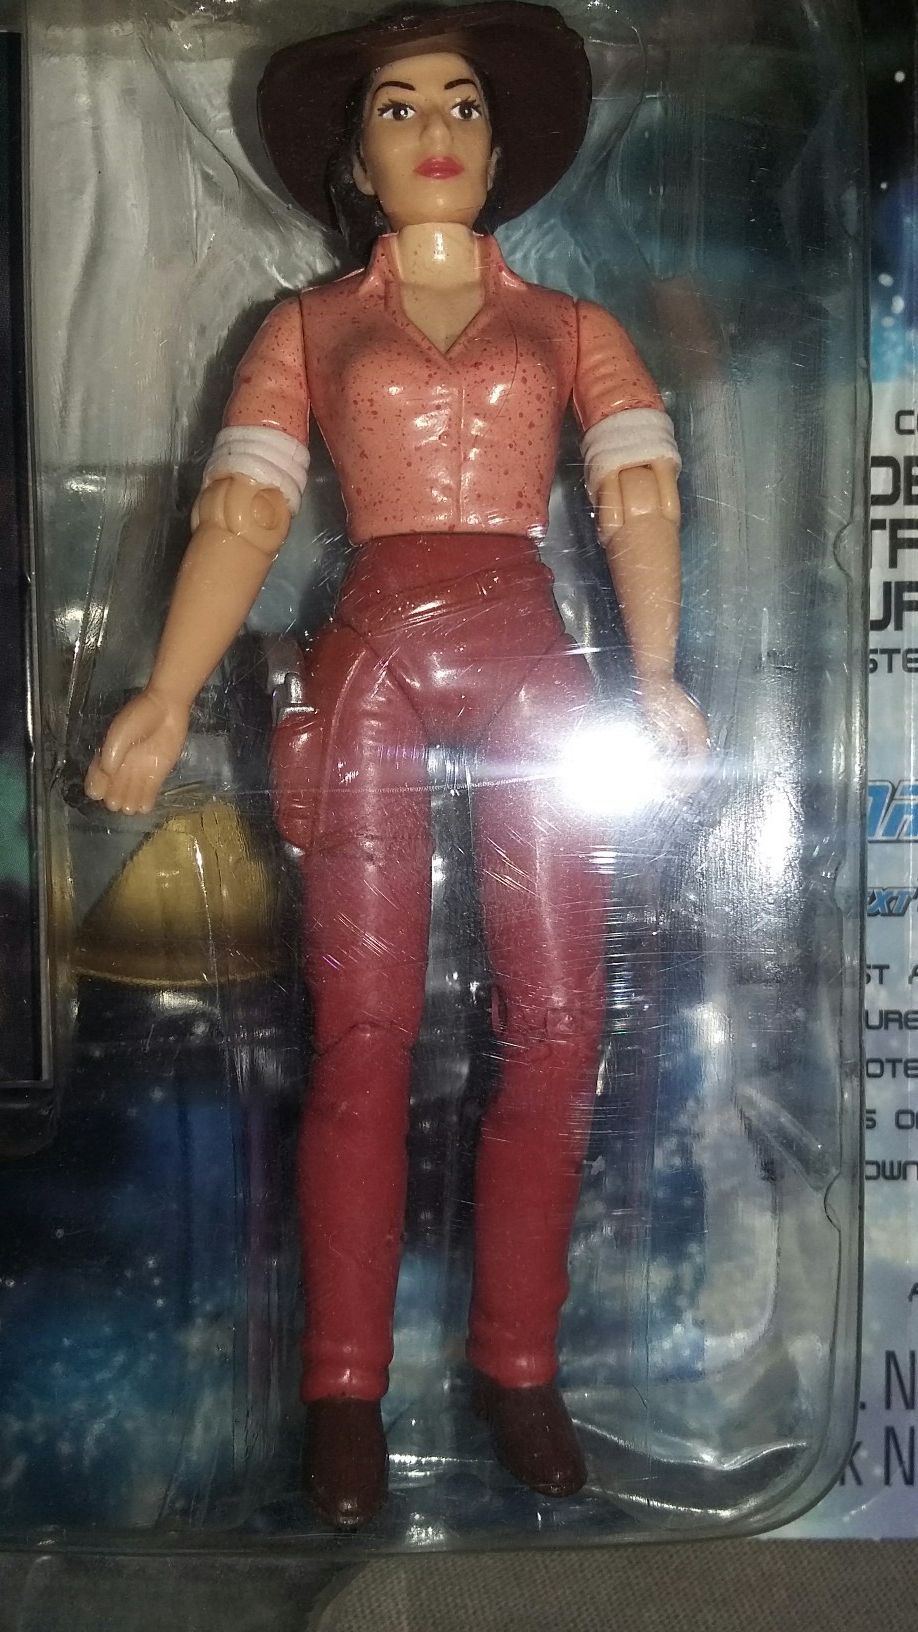 Star Trek action figure.